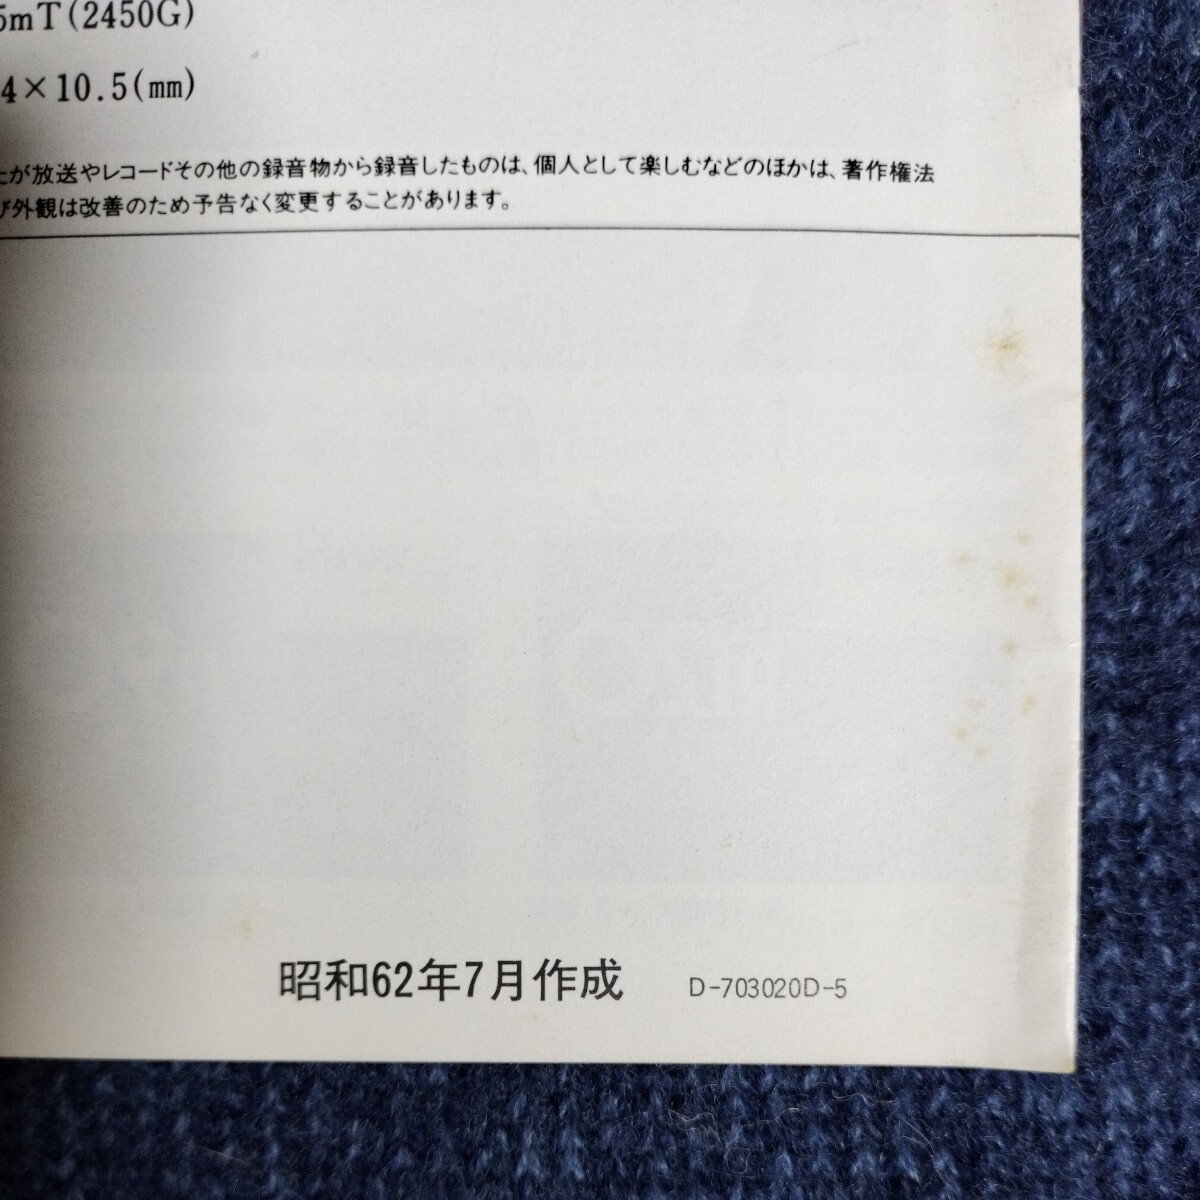 【カタログ】ビクター DAT総合カタログ XD-Z1100 テープデッキ 昭和62年7月 日本ビクター JVCの画像7